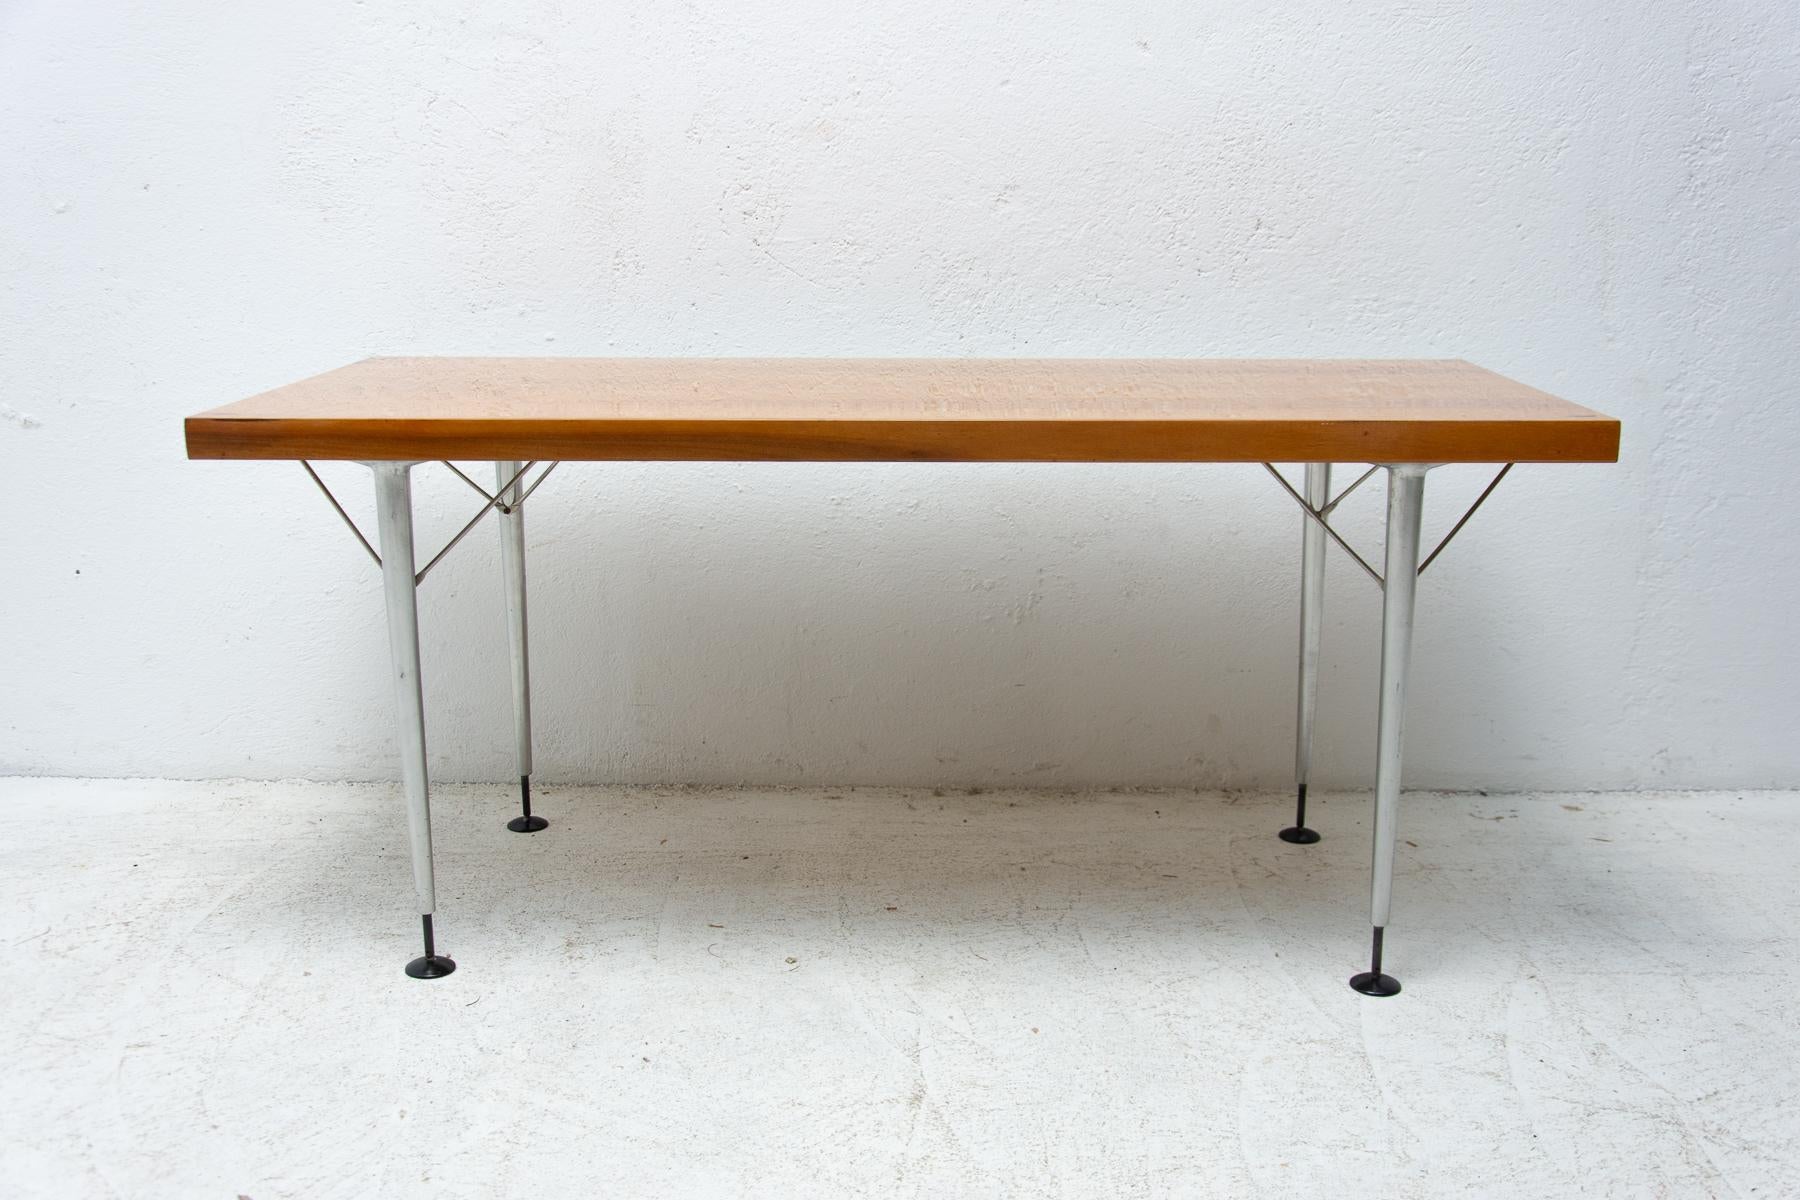 Cette table basse a été fabriquée par ÚP Závody dans l'ancienne Tchécoslovaquie dans les années 1960. La table rappelle l'école de design scandinave et se caractérise par sa simplicité et les joints métalliques sous le plateau du bureau. La table